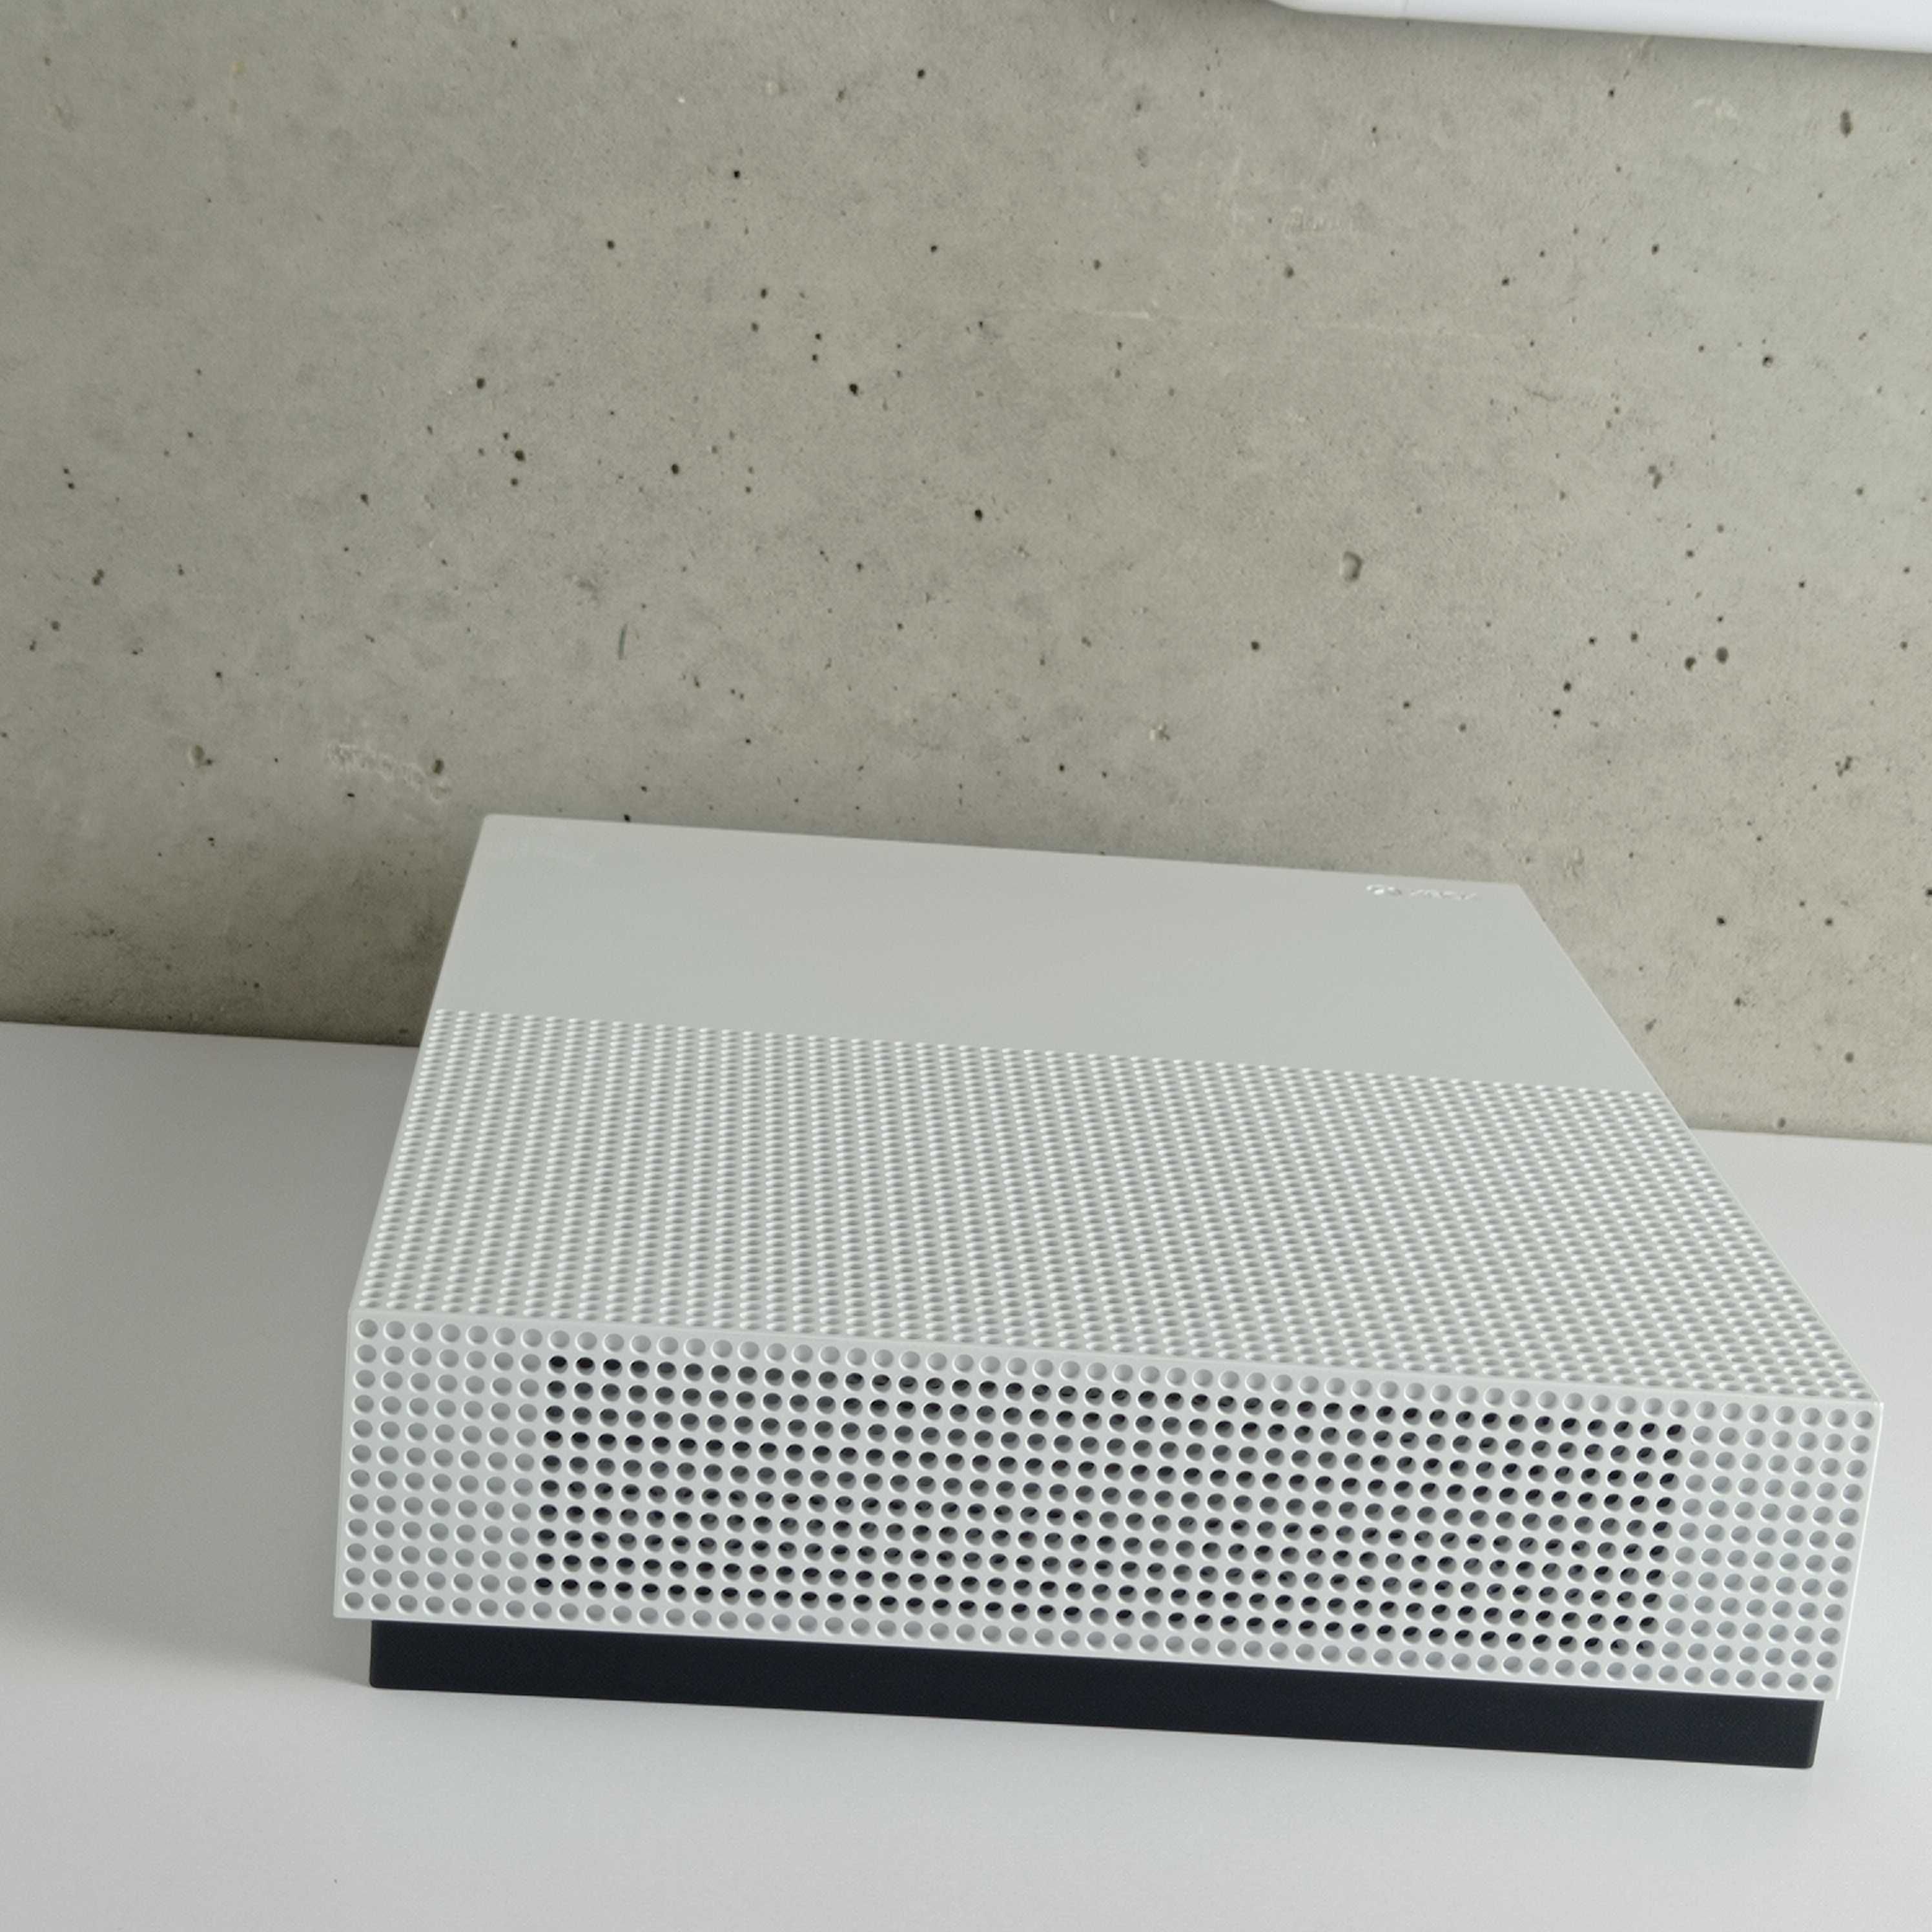 Консоль Microsoft Xbox One S 1TB White Б/У Приставка Іксбокс